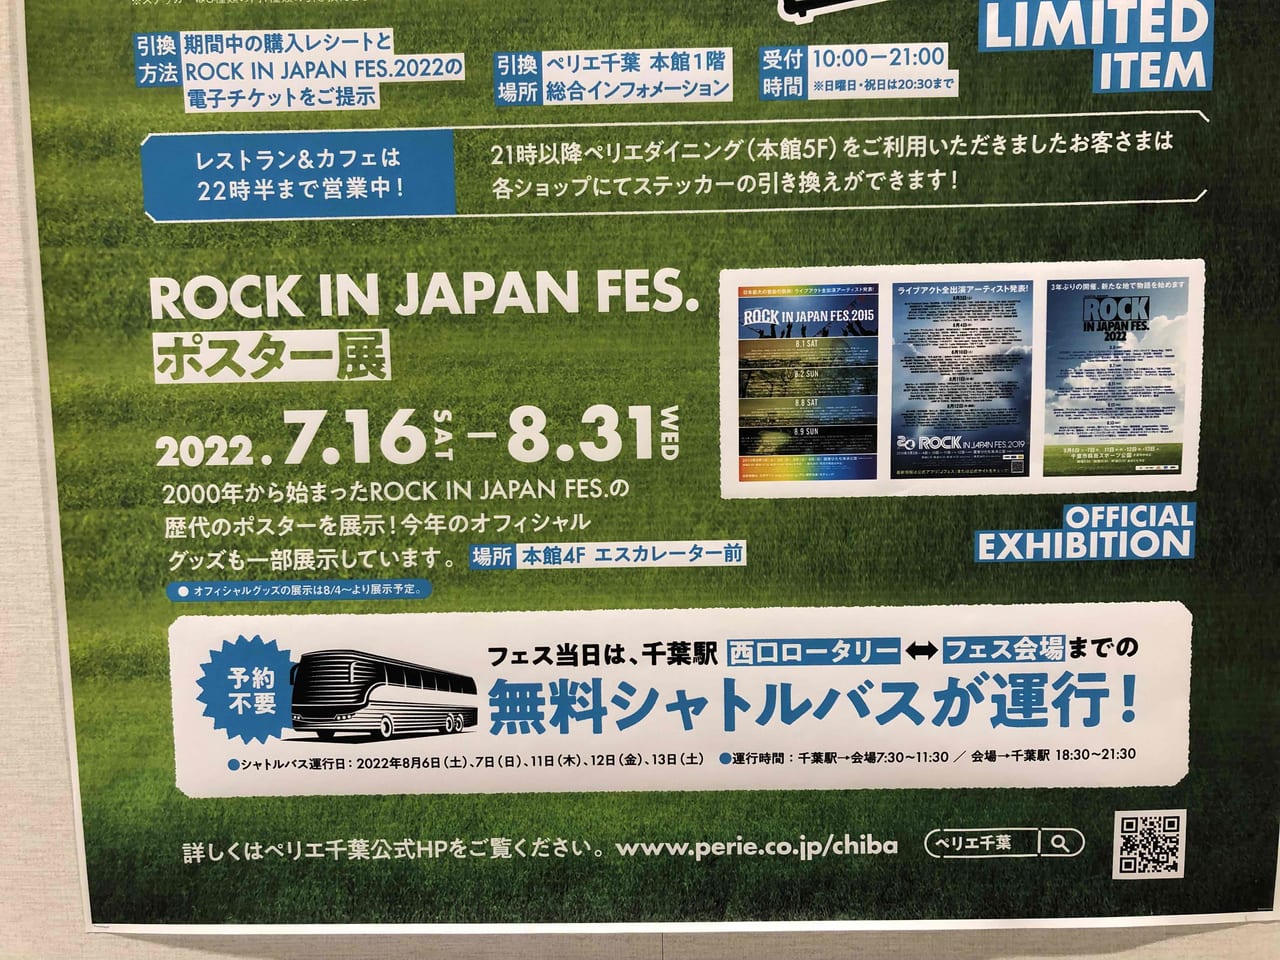 ROCK IN JAPAN FESTIVAL 2022会場までバスが出るお知らせ